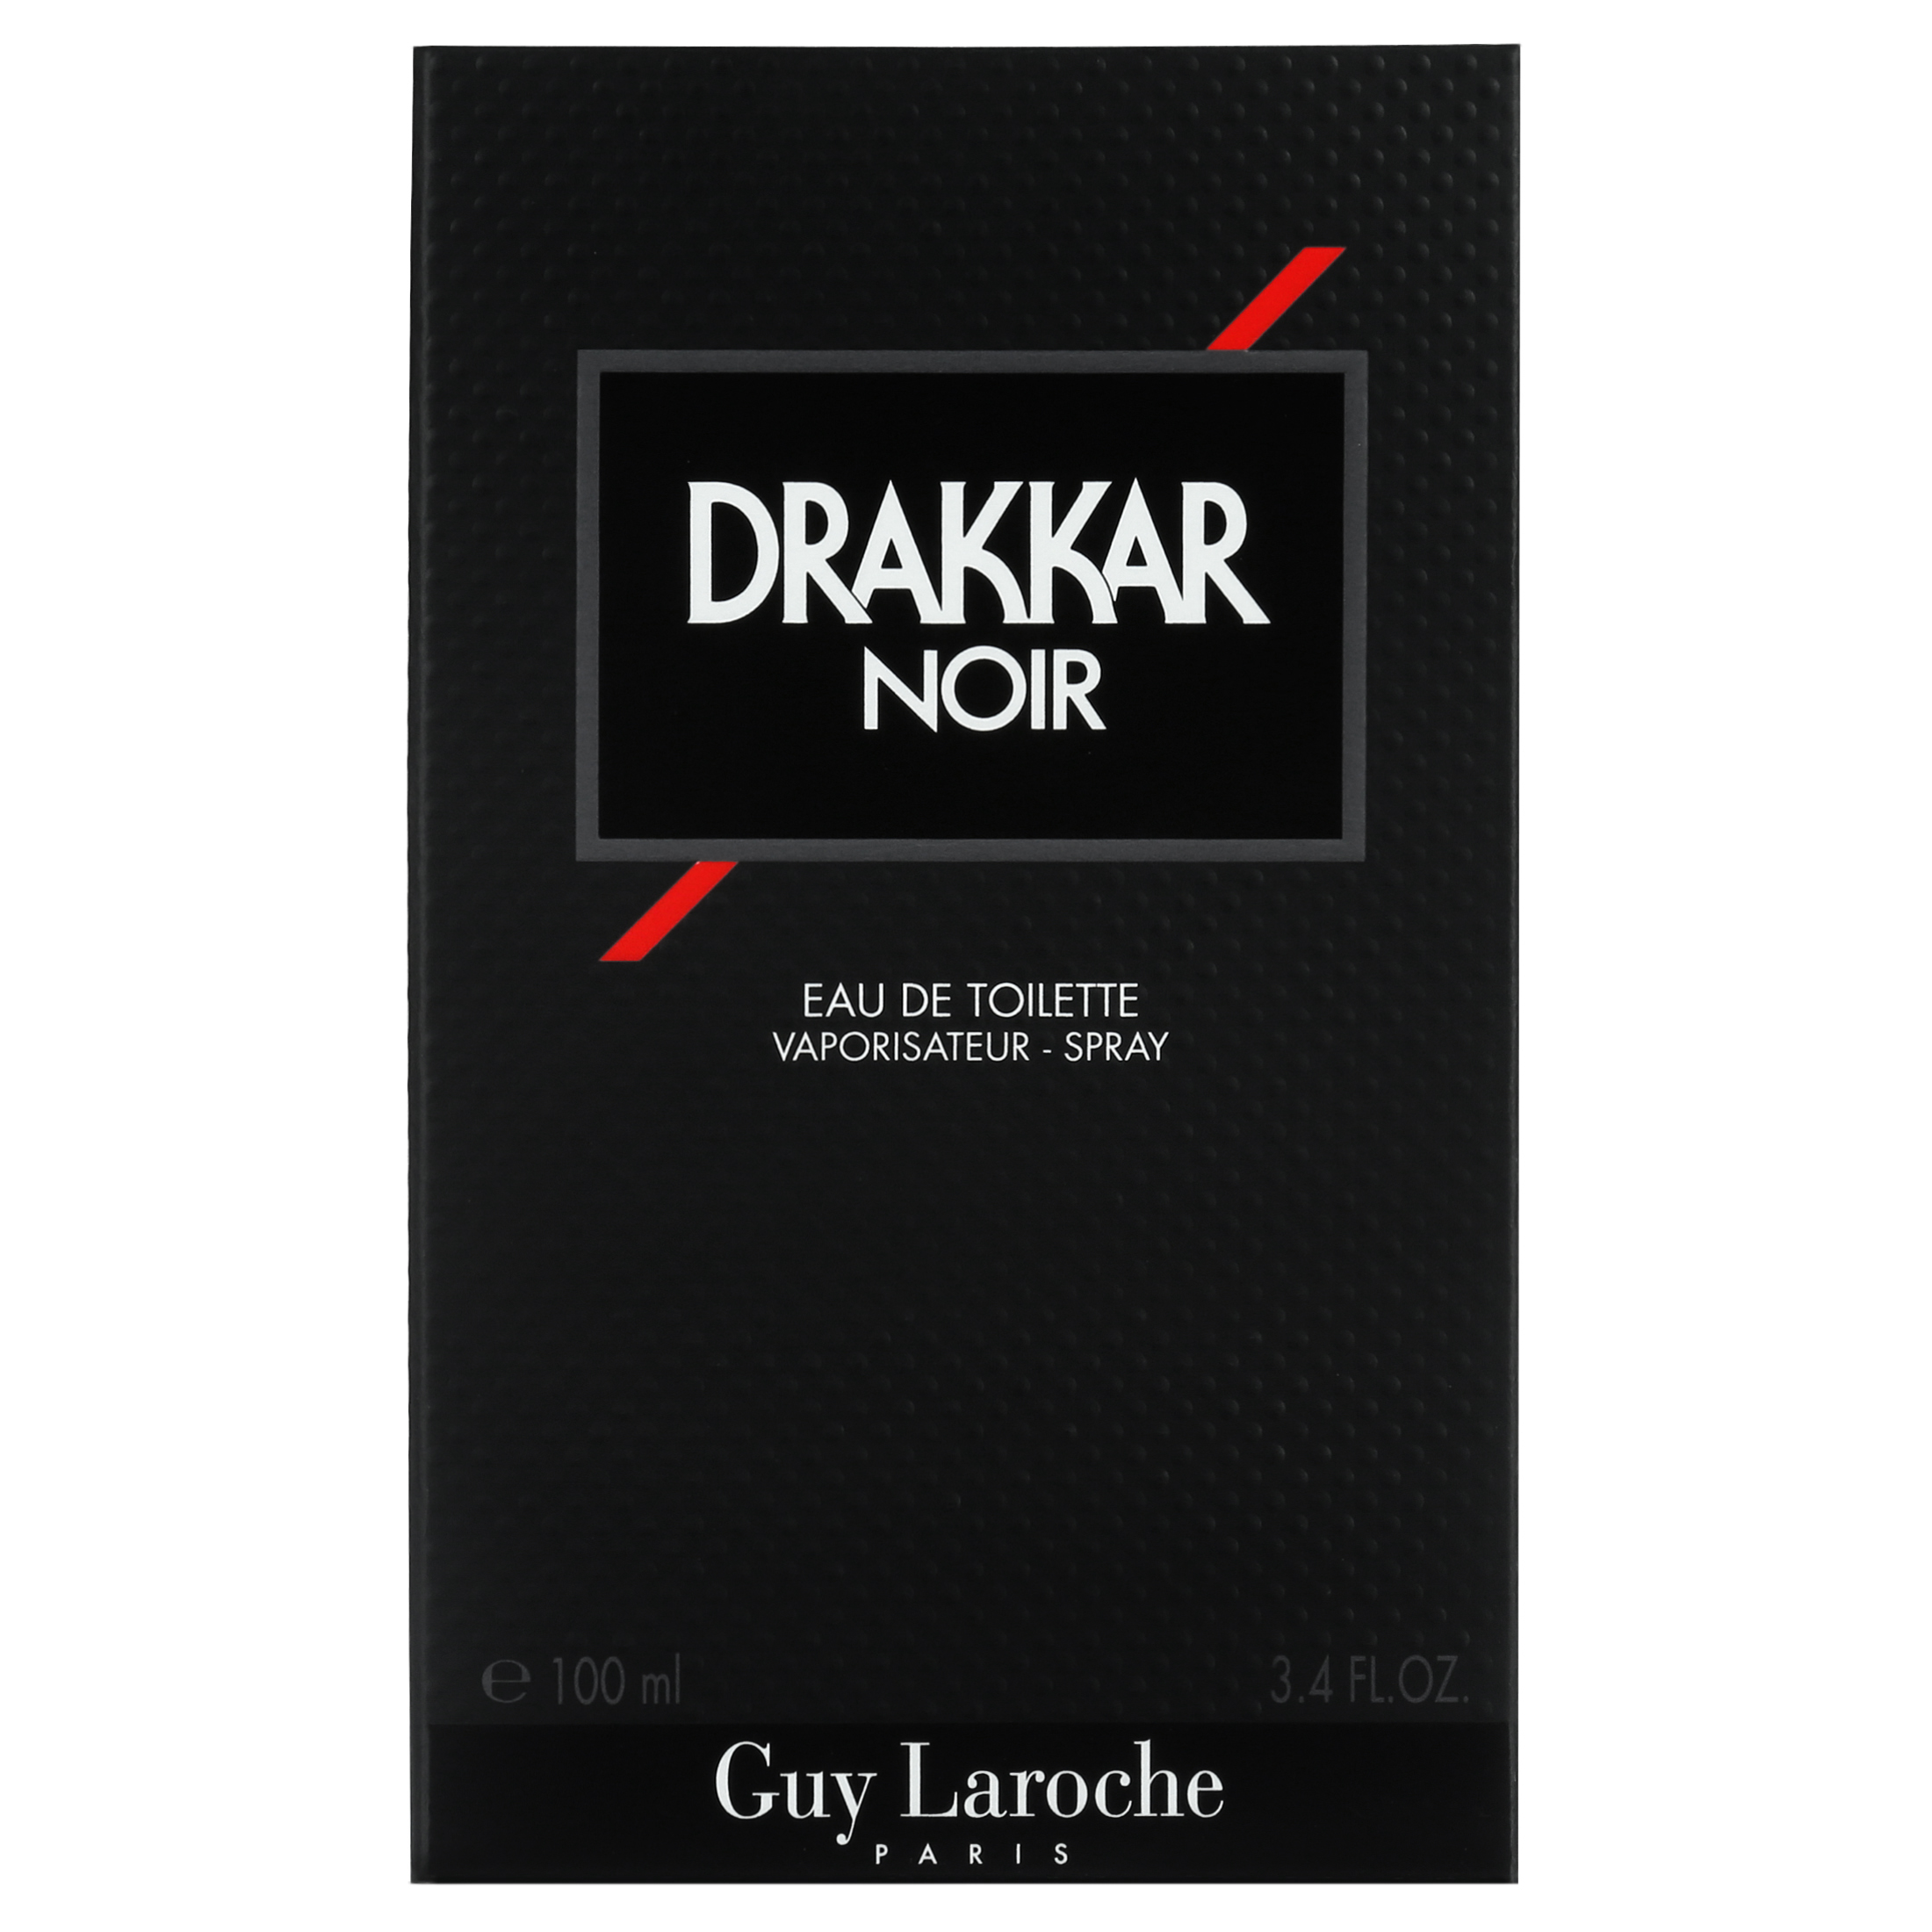 Guy Laroche Drakkar Noir Eau de Toilette, Cologne for Men, 3.4 oz - image 2 of 6